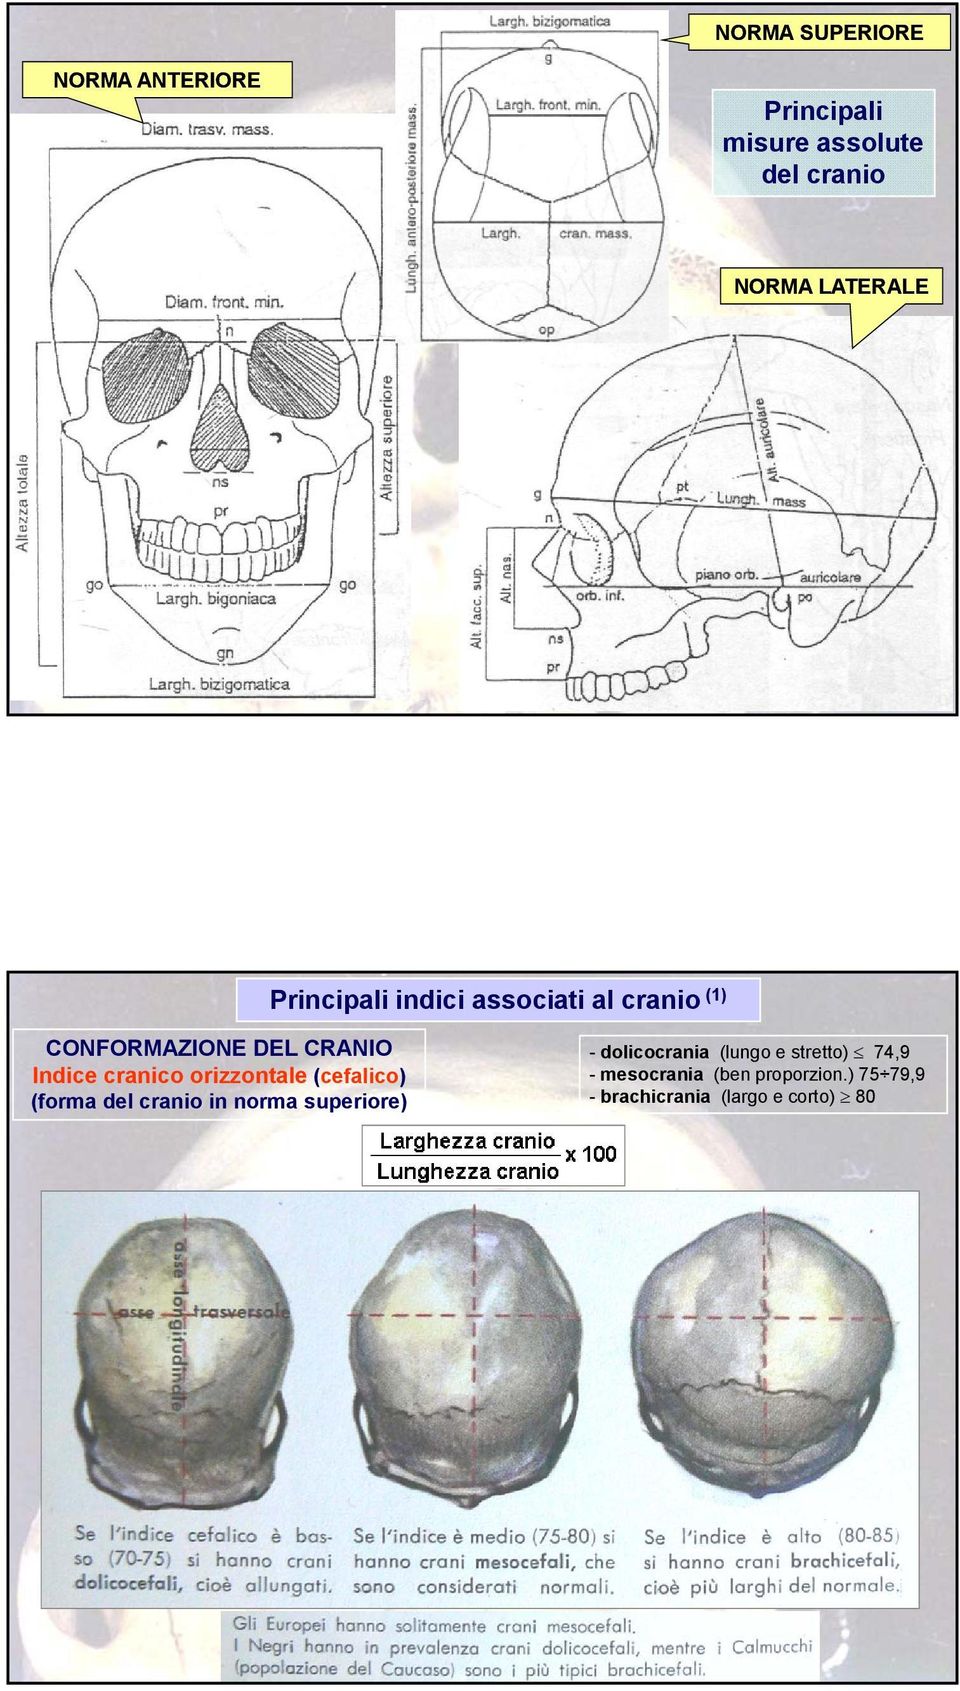 orizzontale (cefalico) (forma del cranio in norma superiore) - dolicocrania (lungo e